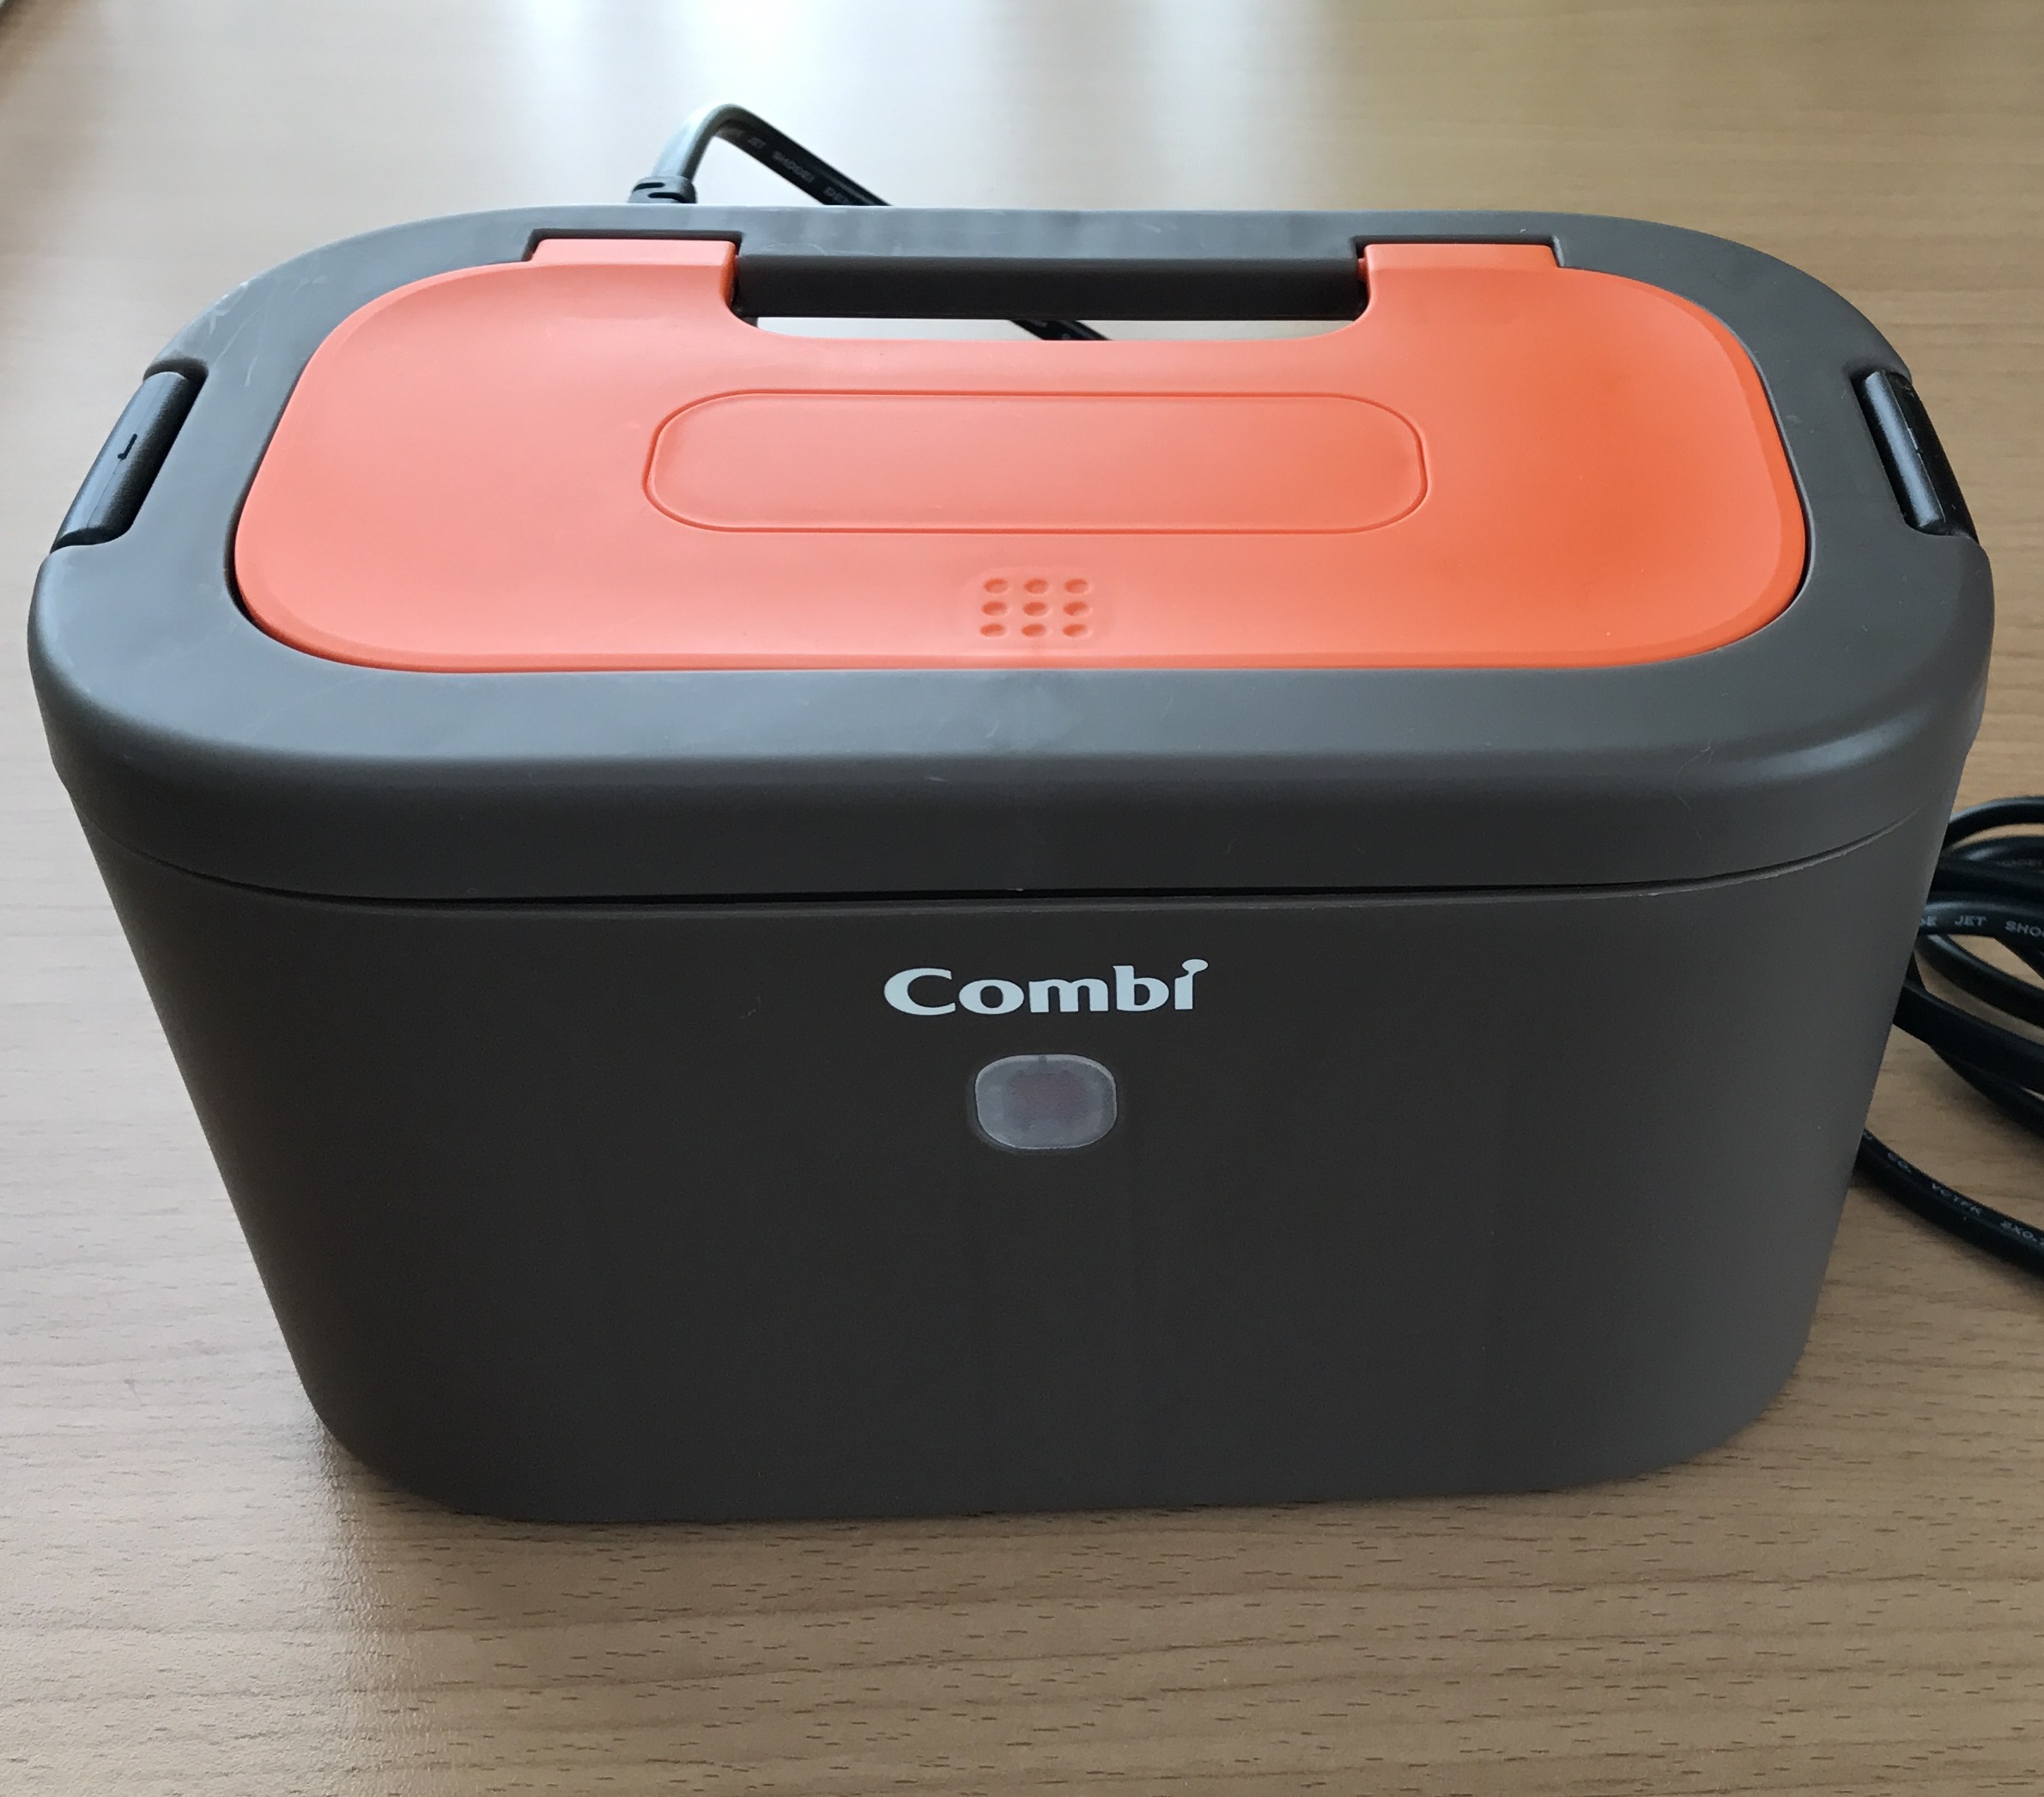 コンビ Combi おしり拭きあたため器 クイックウォーマー LED+ネオンオレンジ 上から温めるトップウォーマーシステム 安全